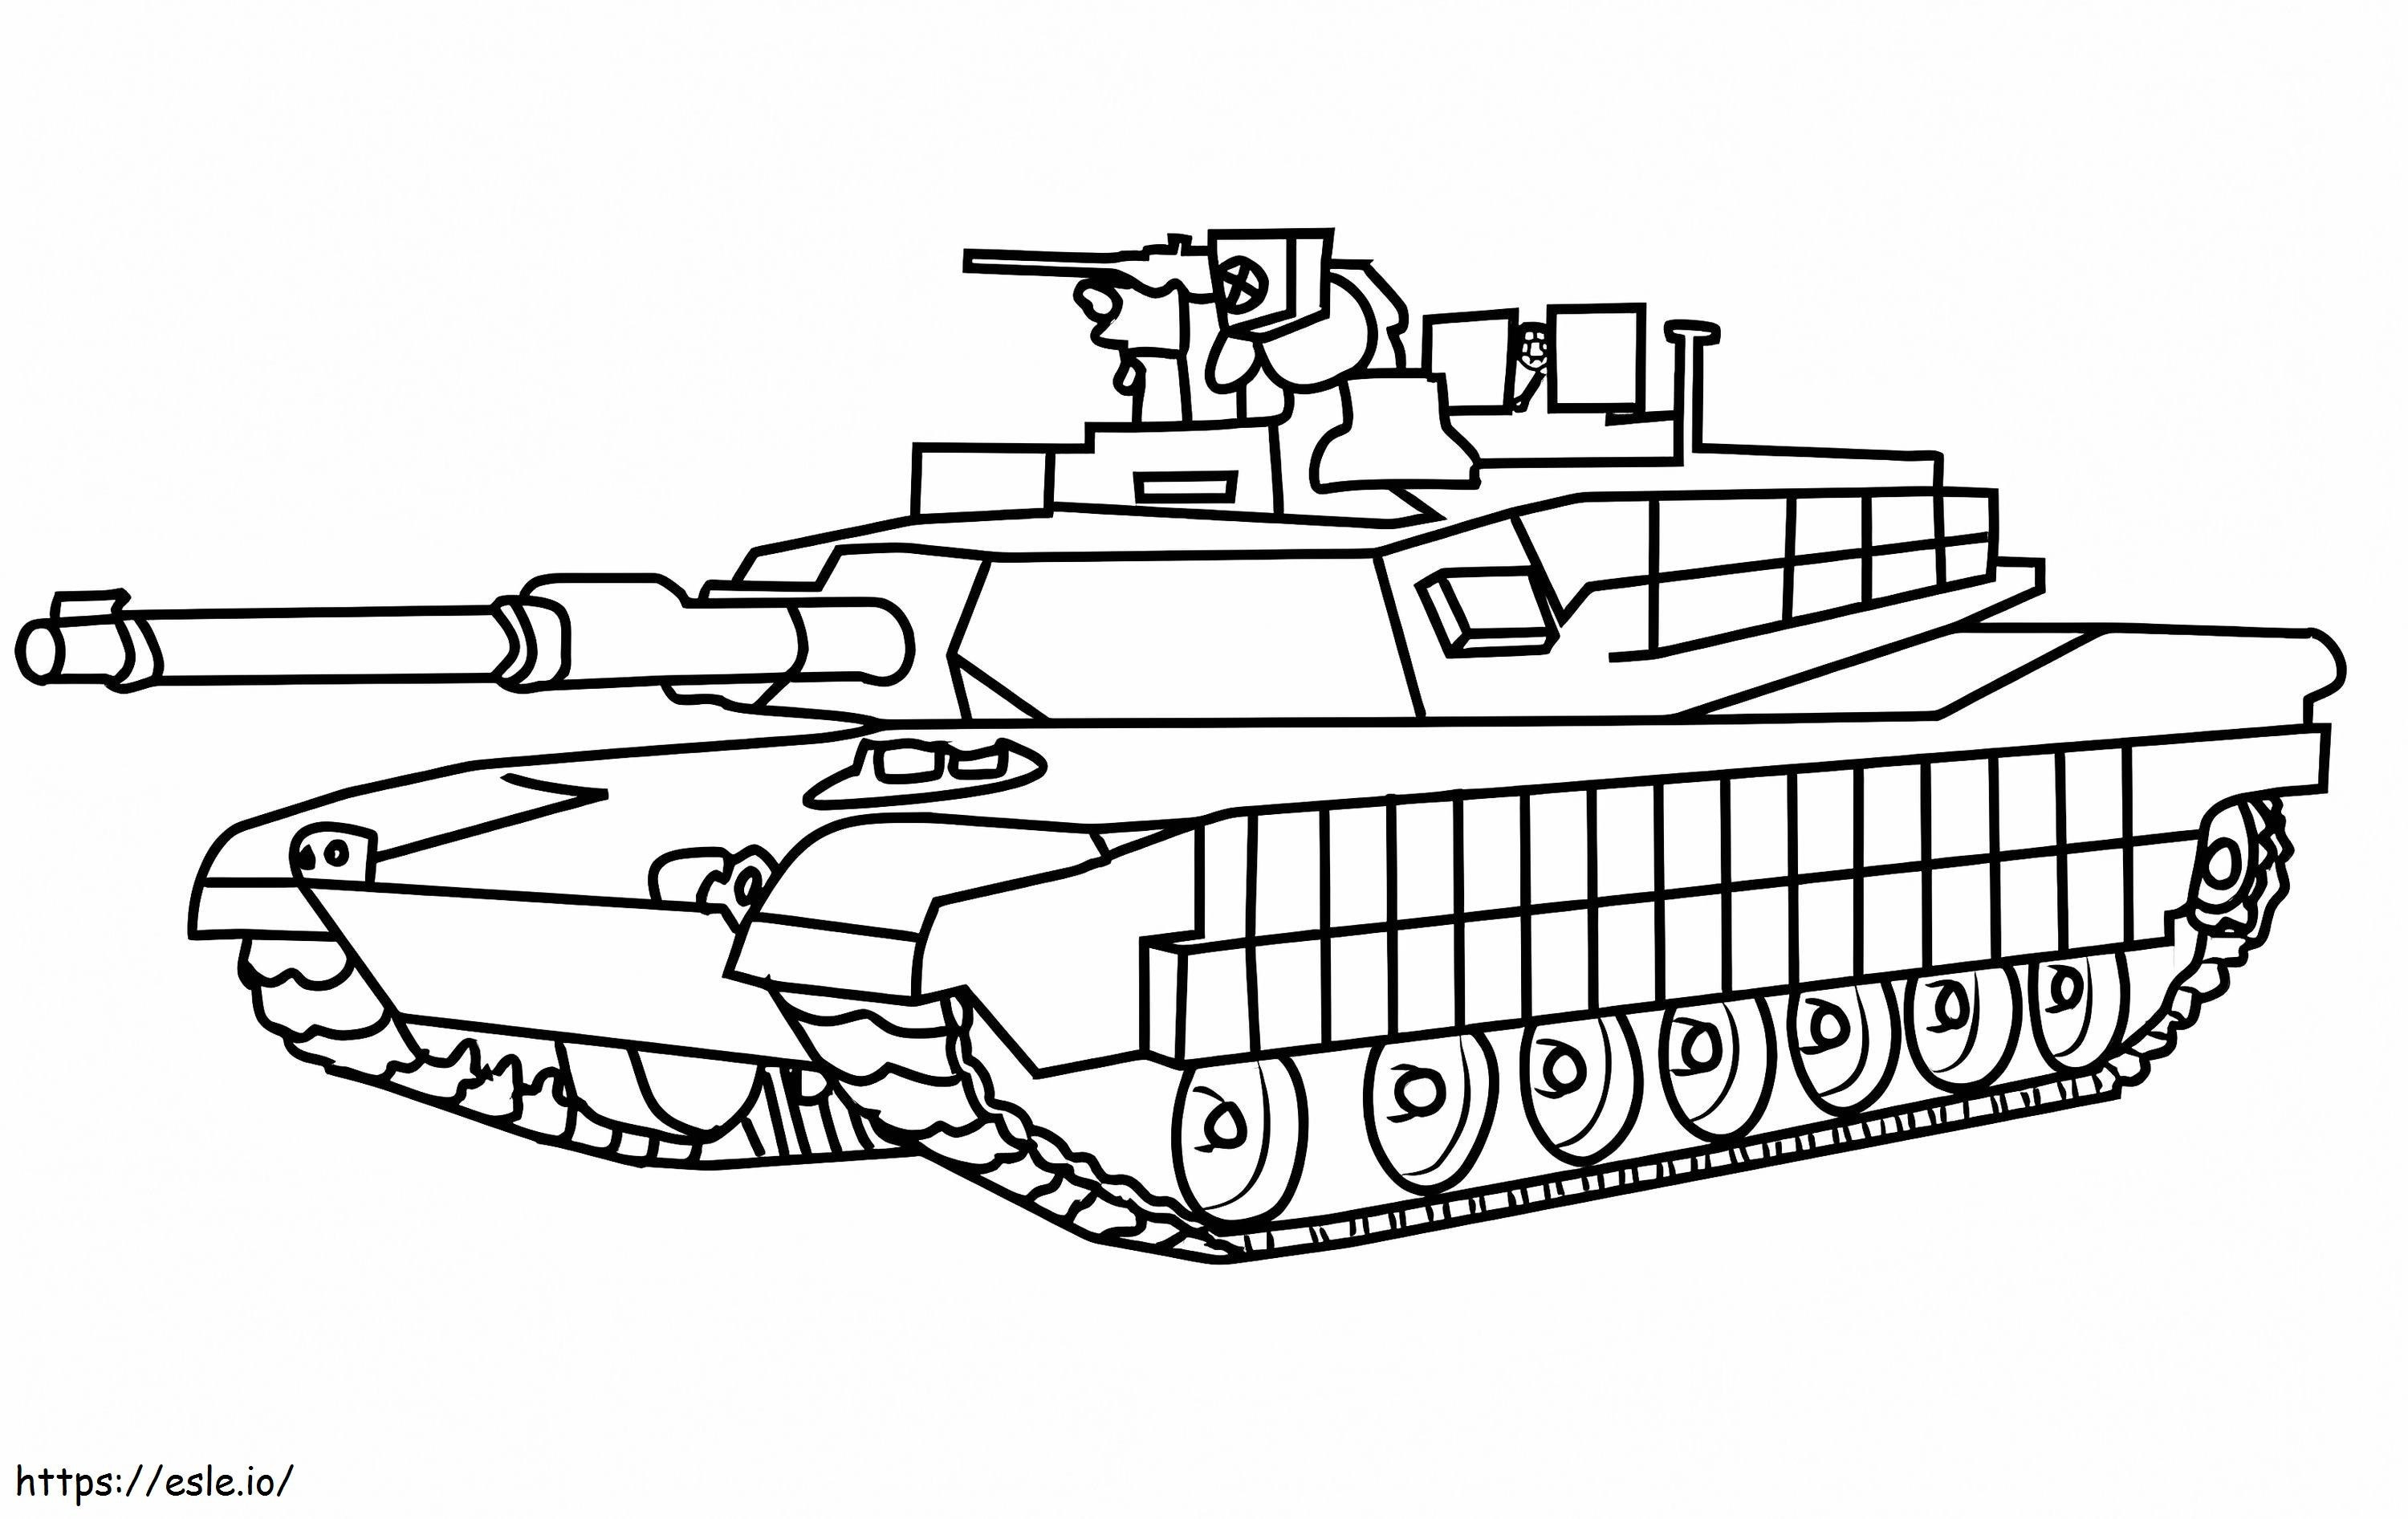 Carro armato dell'esercito M1 Abrams da colorare